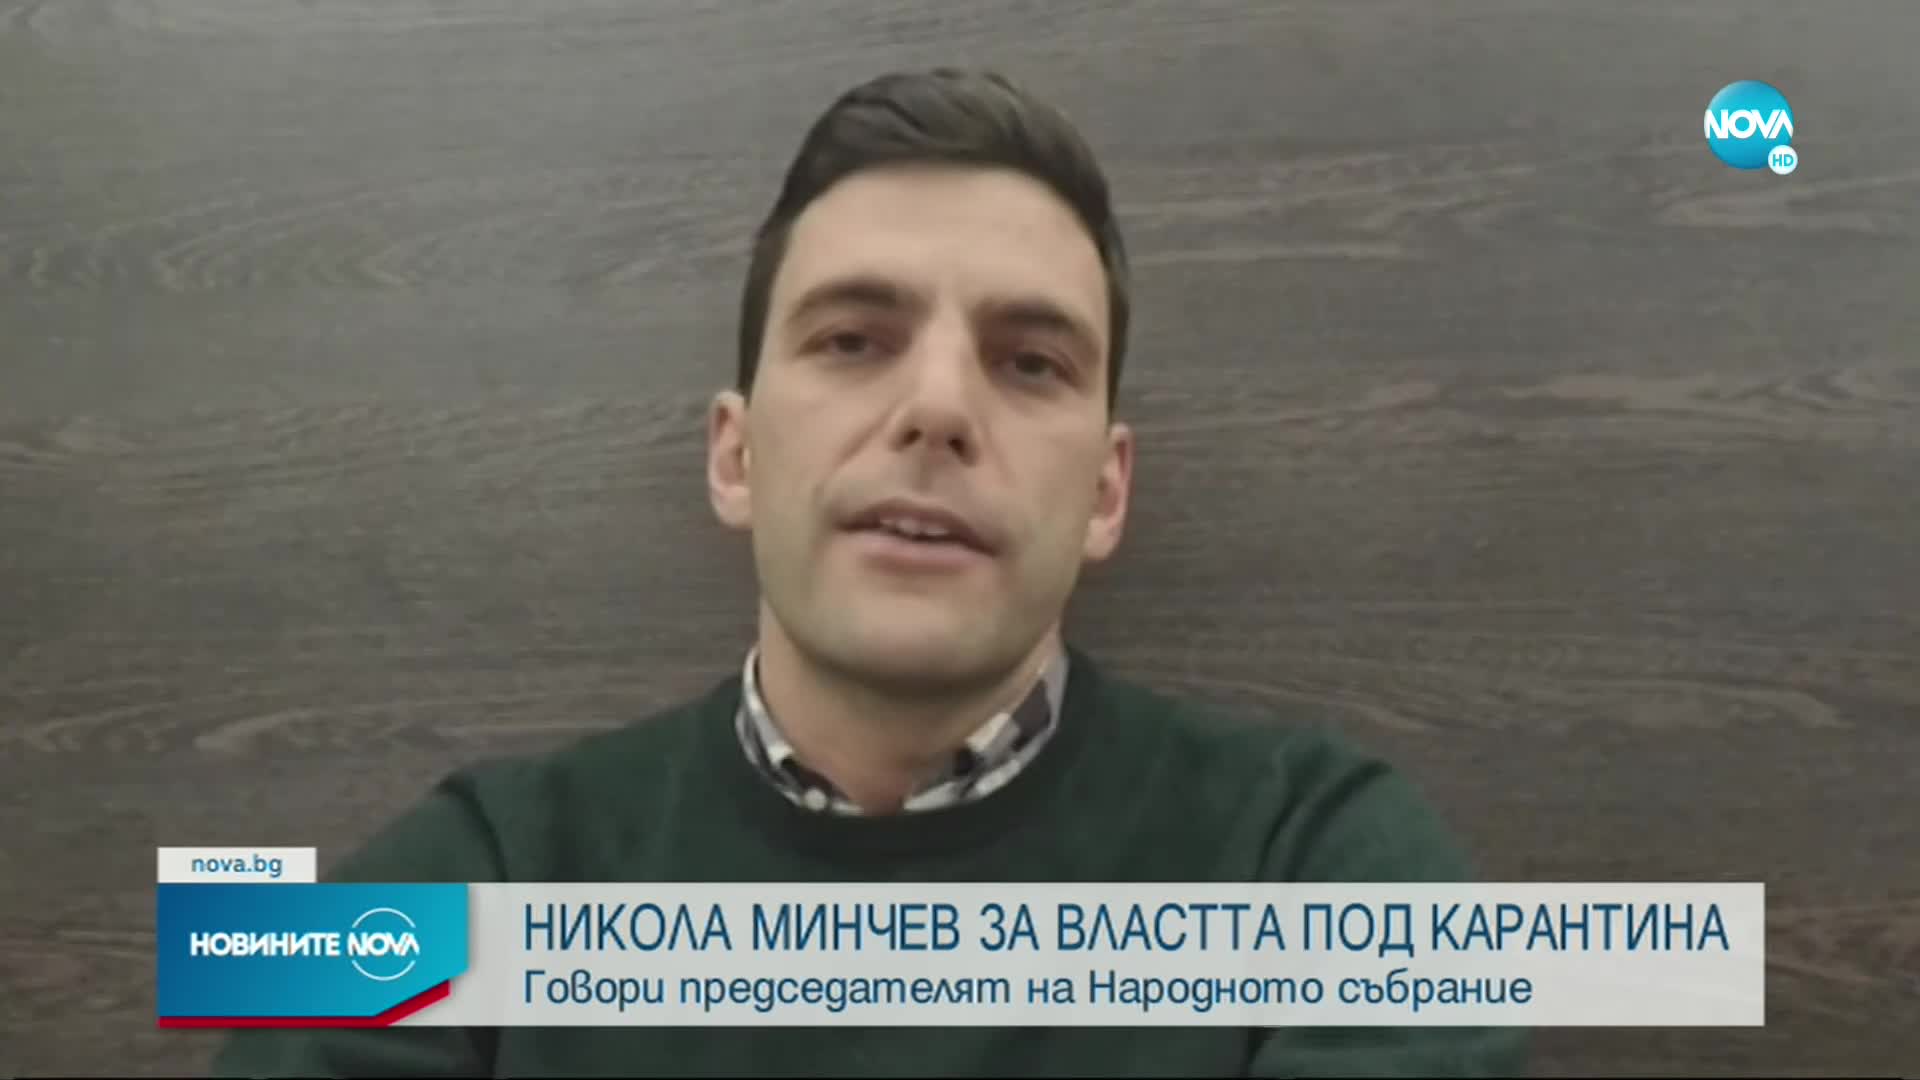 Никола Минчев ексклузивно пред NOVA: Разбрах, че съм с COVID-19 след КСНС